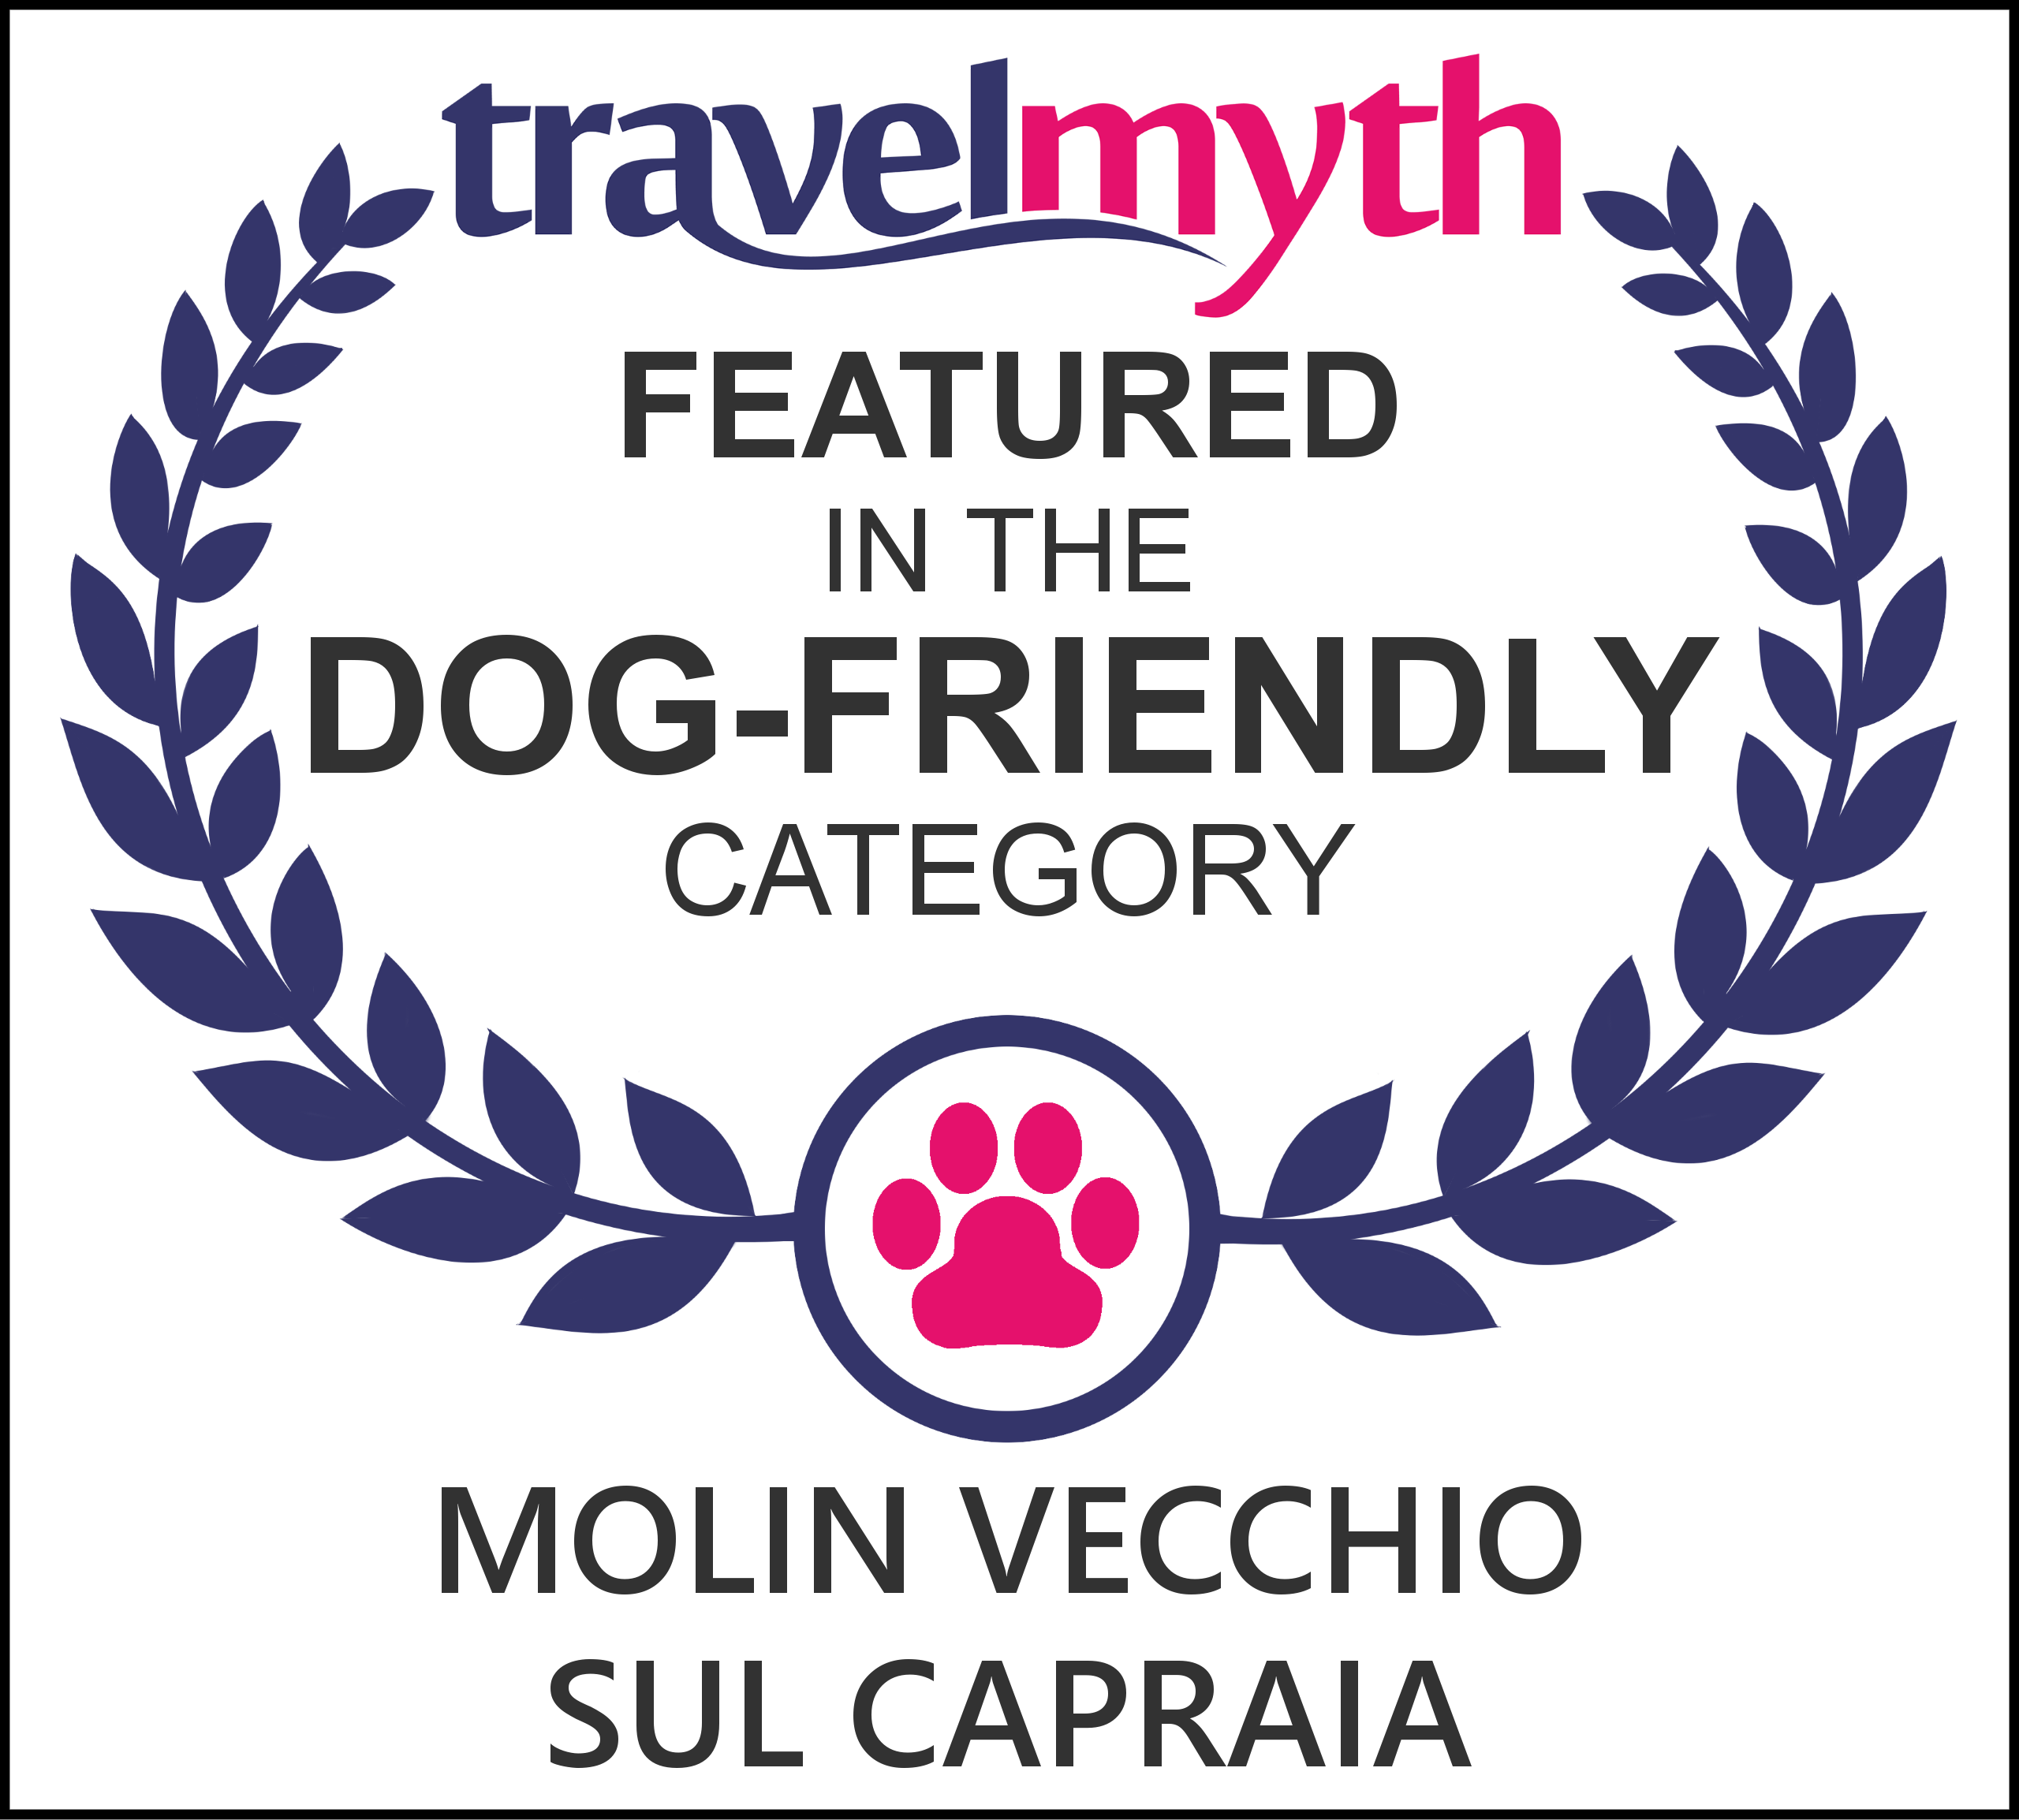 Moli Vecchio Travelmyth Dog friendly